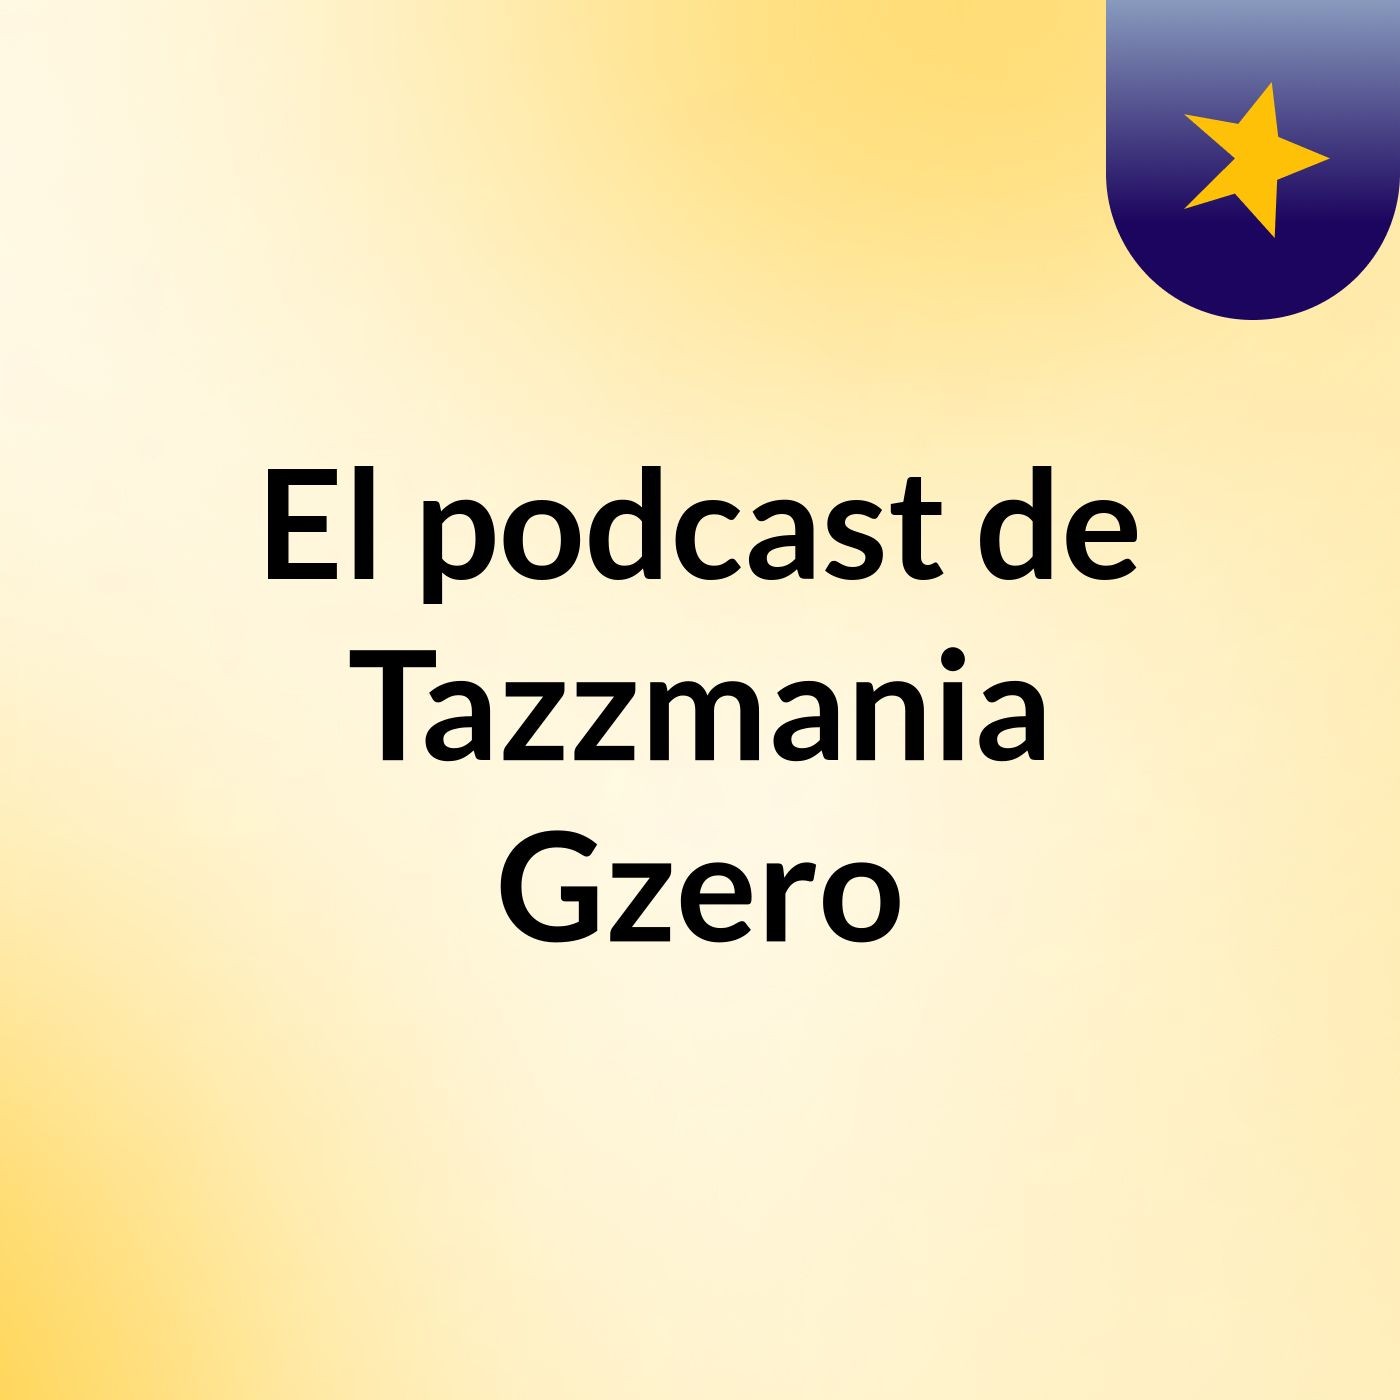 El podcast de Tazzmania Gzero